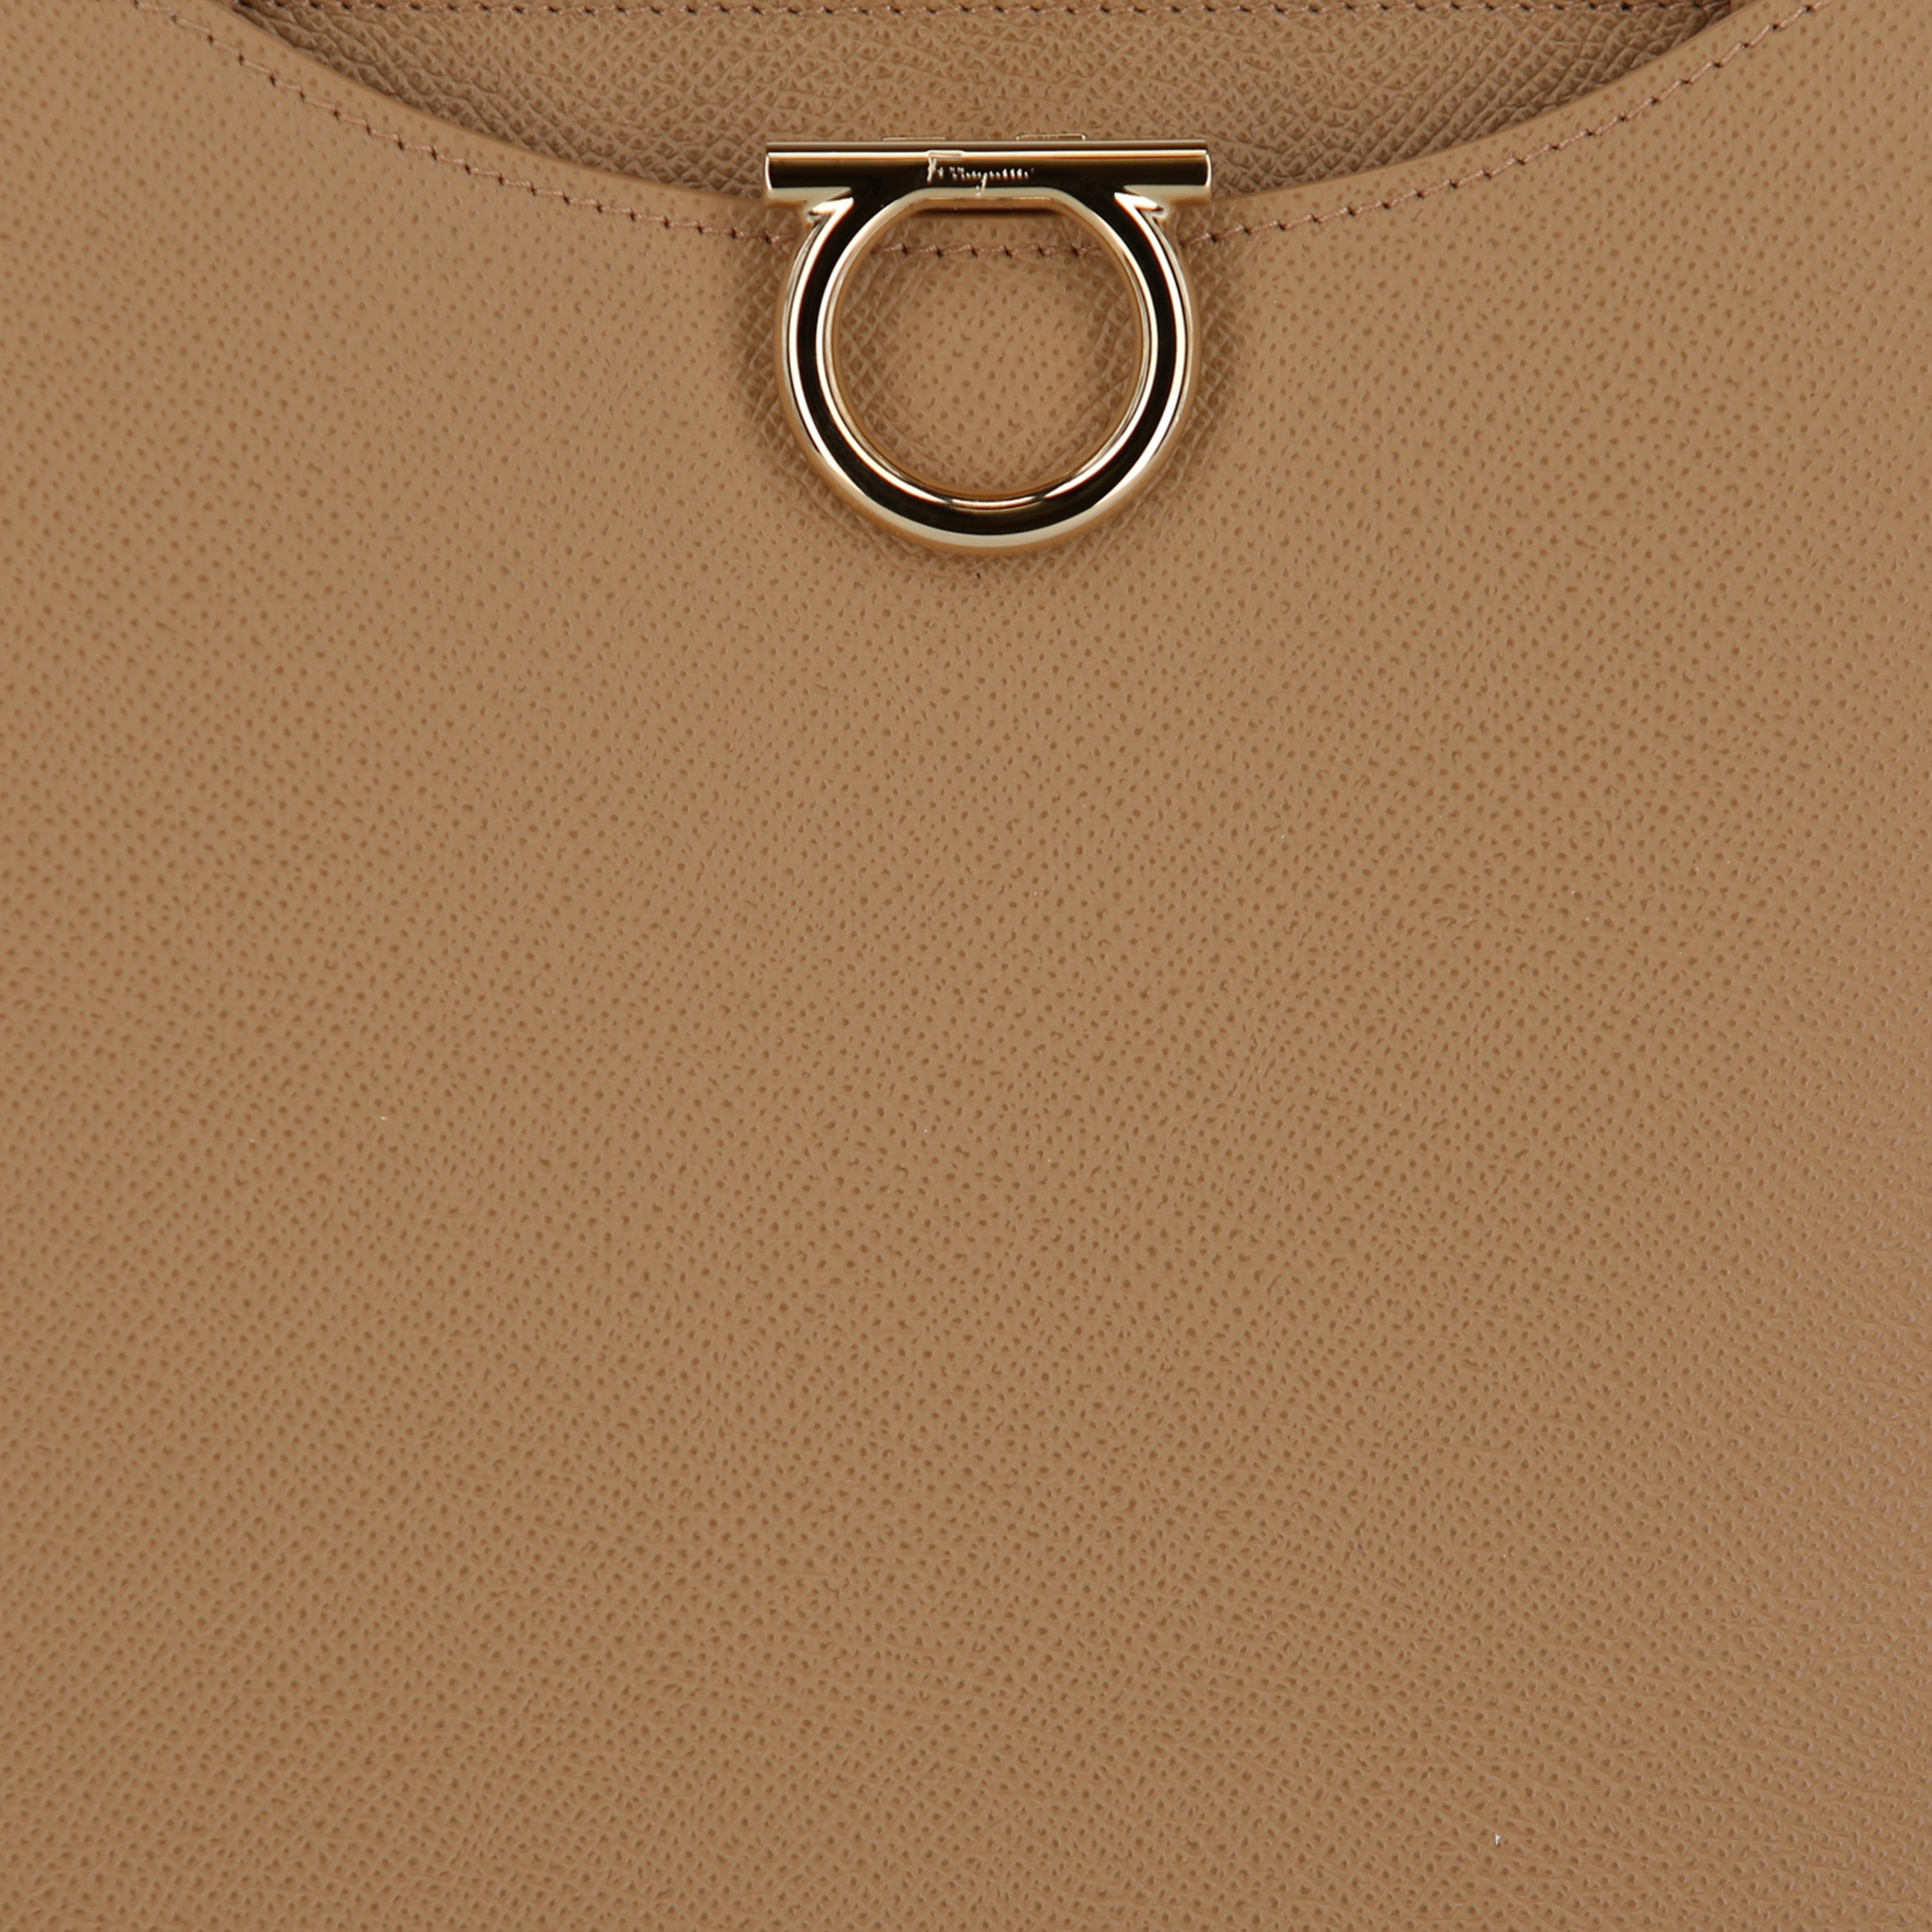 Ferragamo Gemini Camel Leather Women's Shoulder Bag 213935-760963